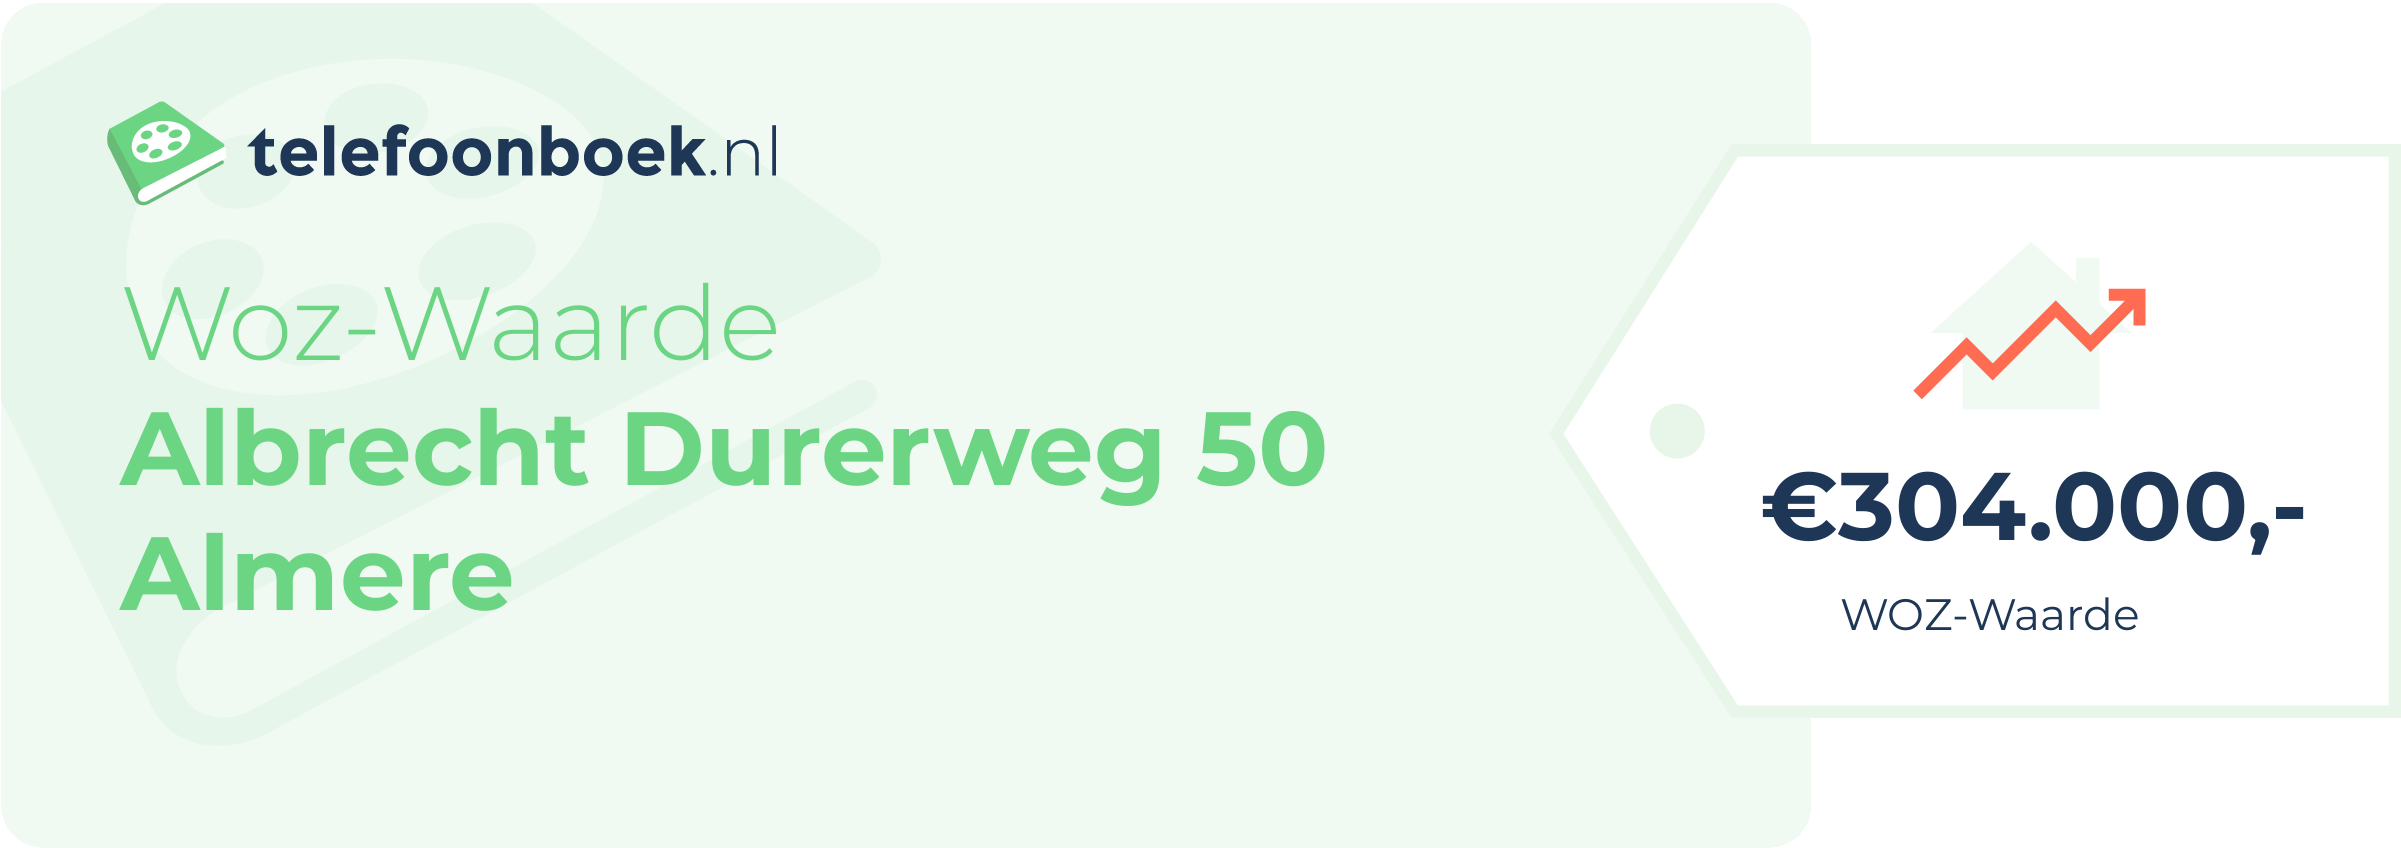 WOZ-waarde Albrecht Durerweg 50 Almere